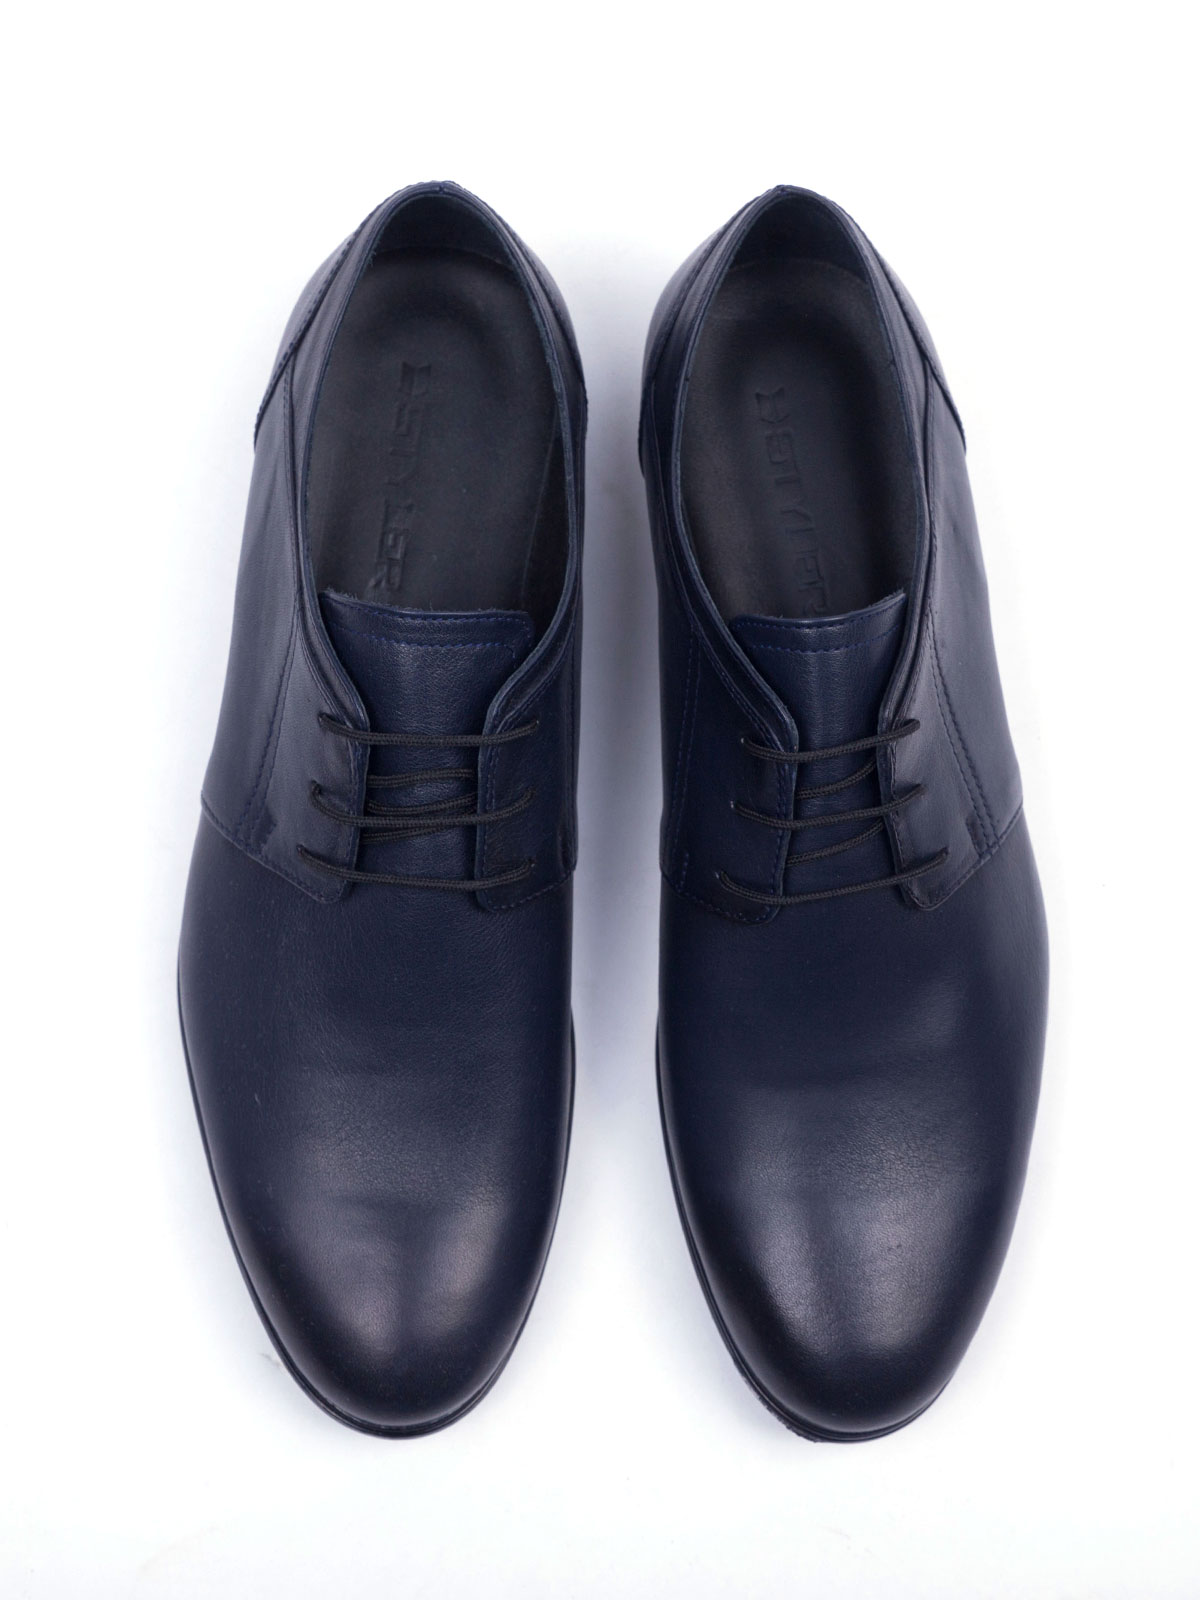 Σκούρα μπλε παπούτσια - 81054 - € 50.06 img2